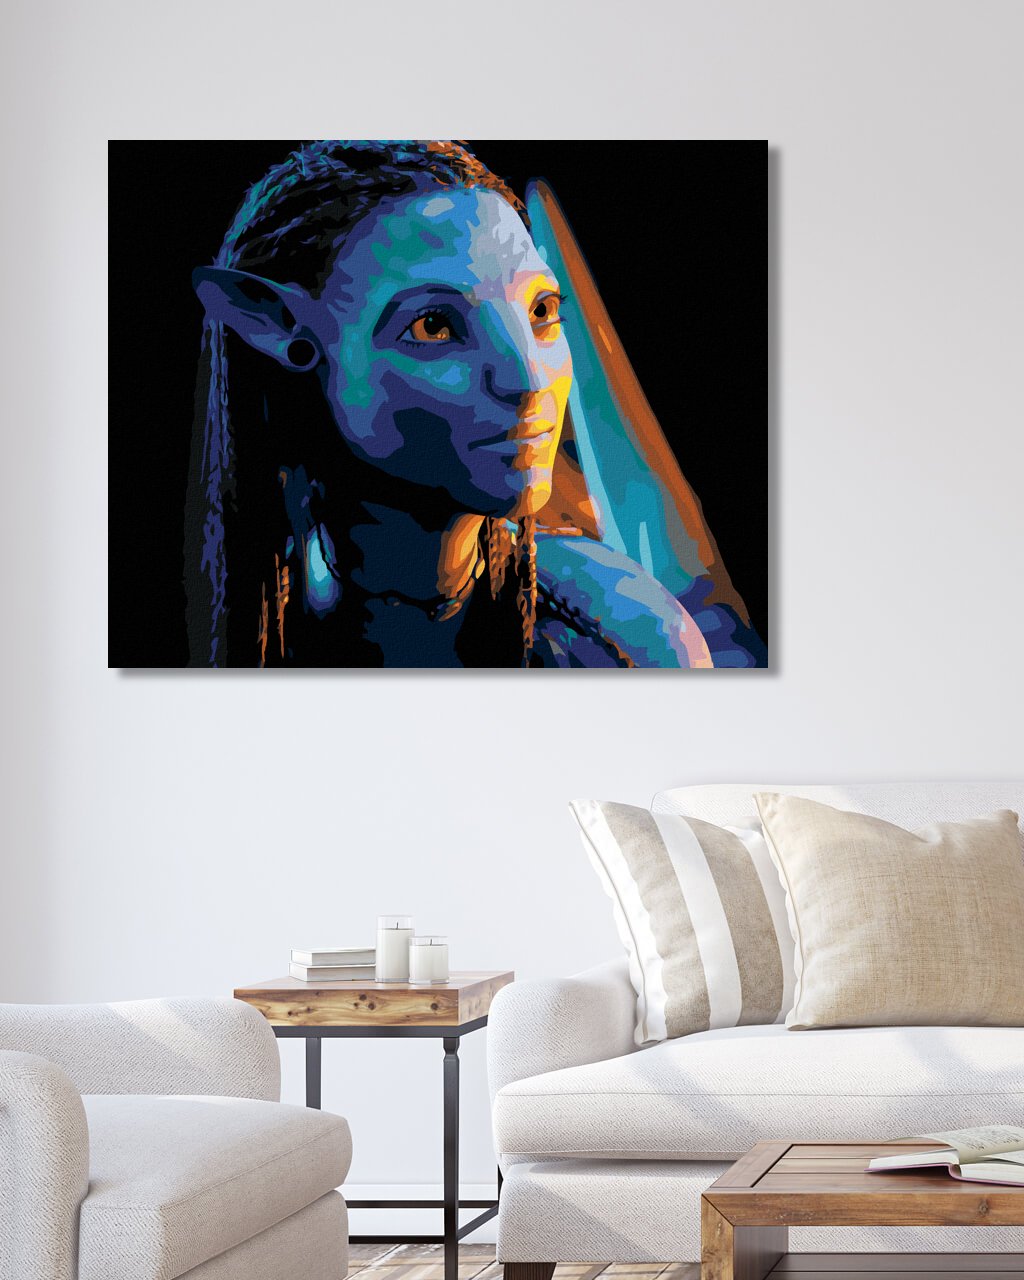 Maľovanie podľa čísel Avatar: Neytiri 40x50cm Zuty